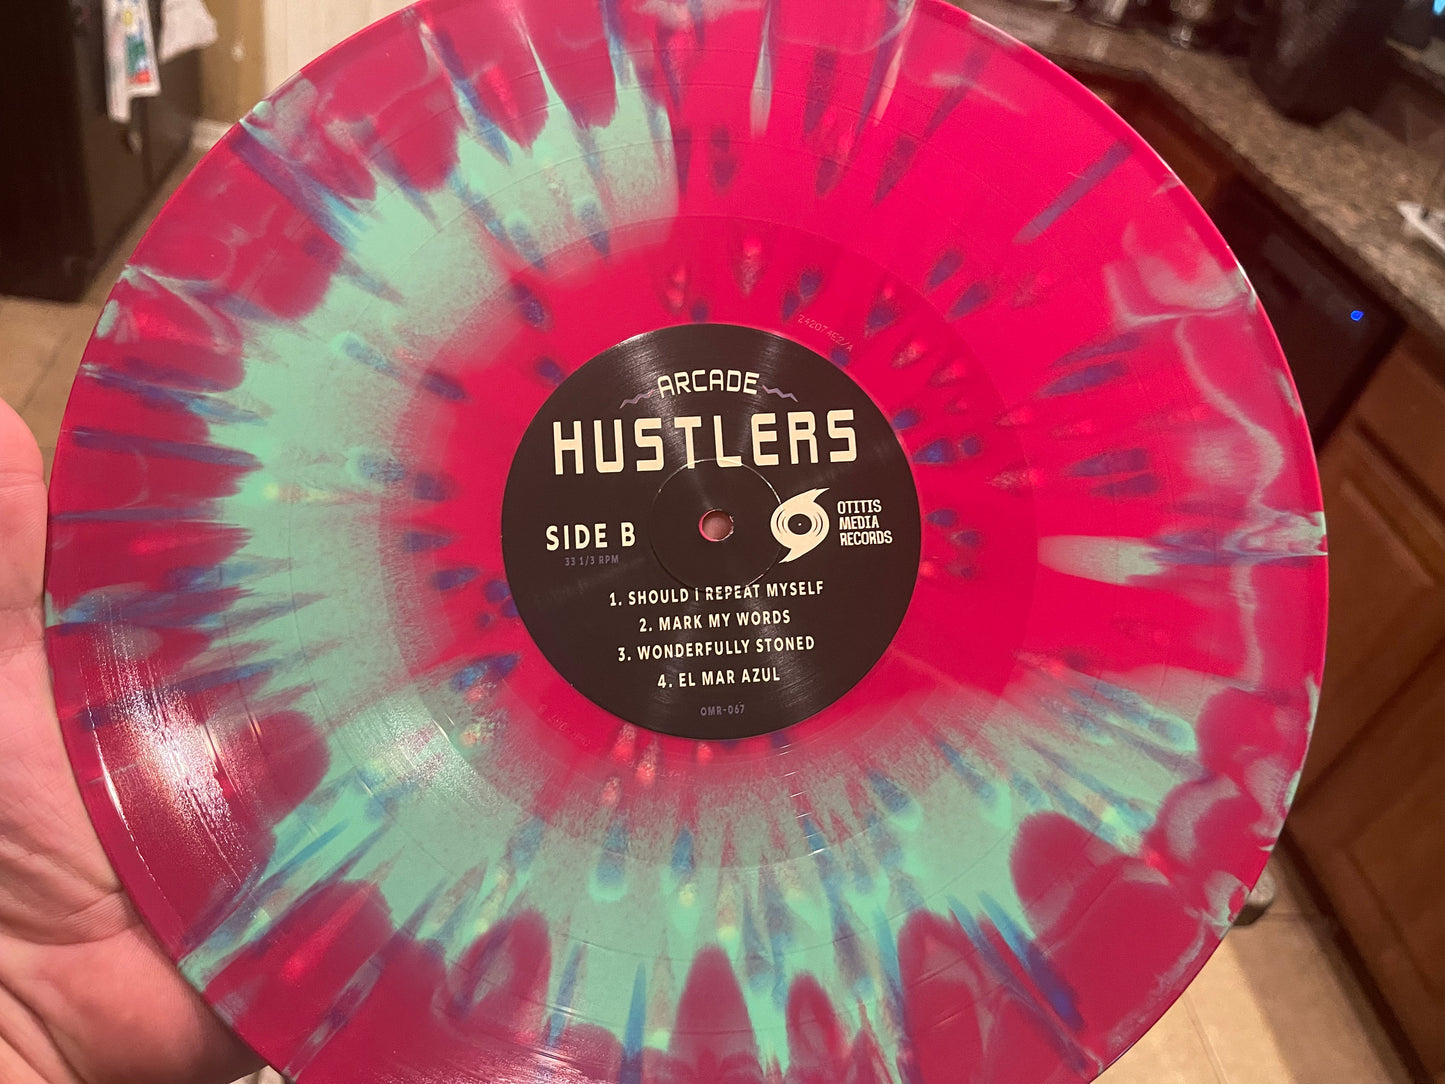 OMR-067 Arcade Hustlers s/t LP (Vinyl) +Digital Download